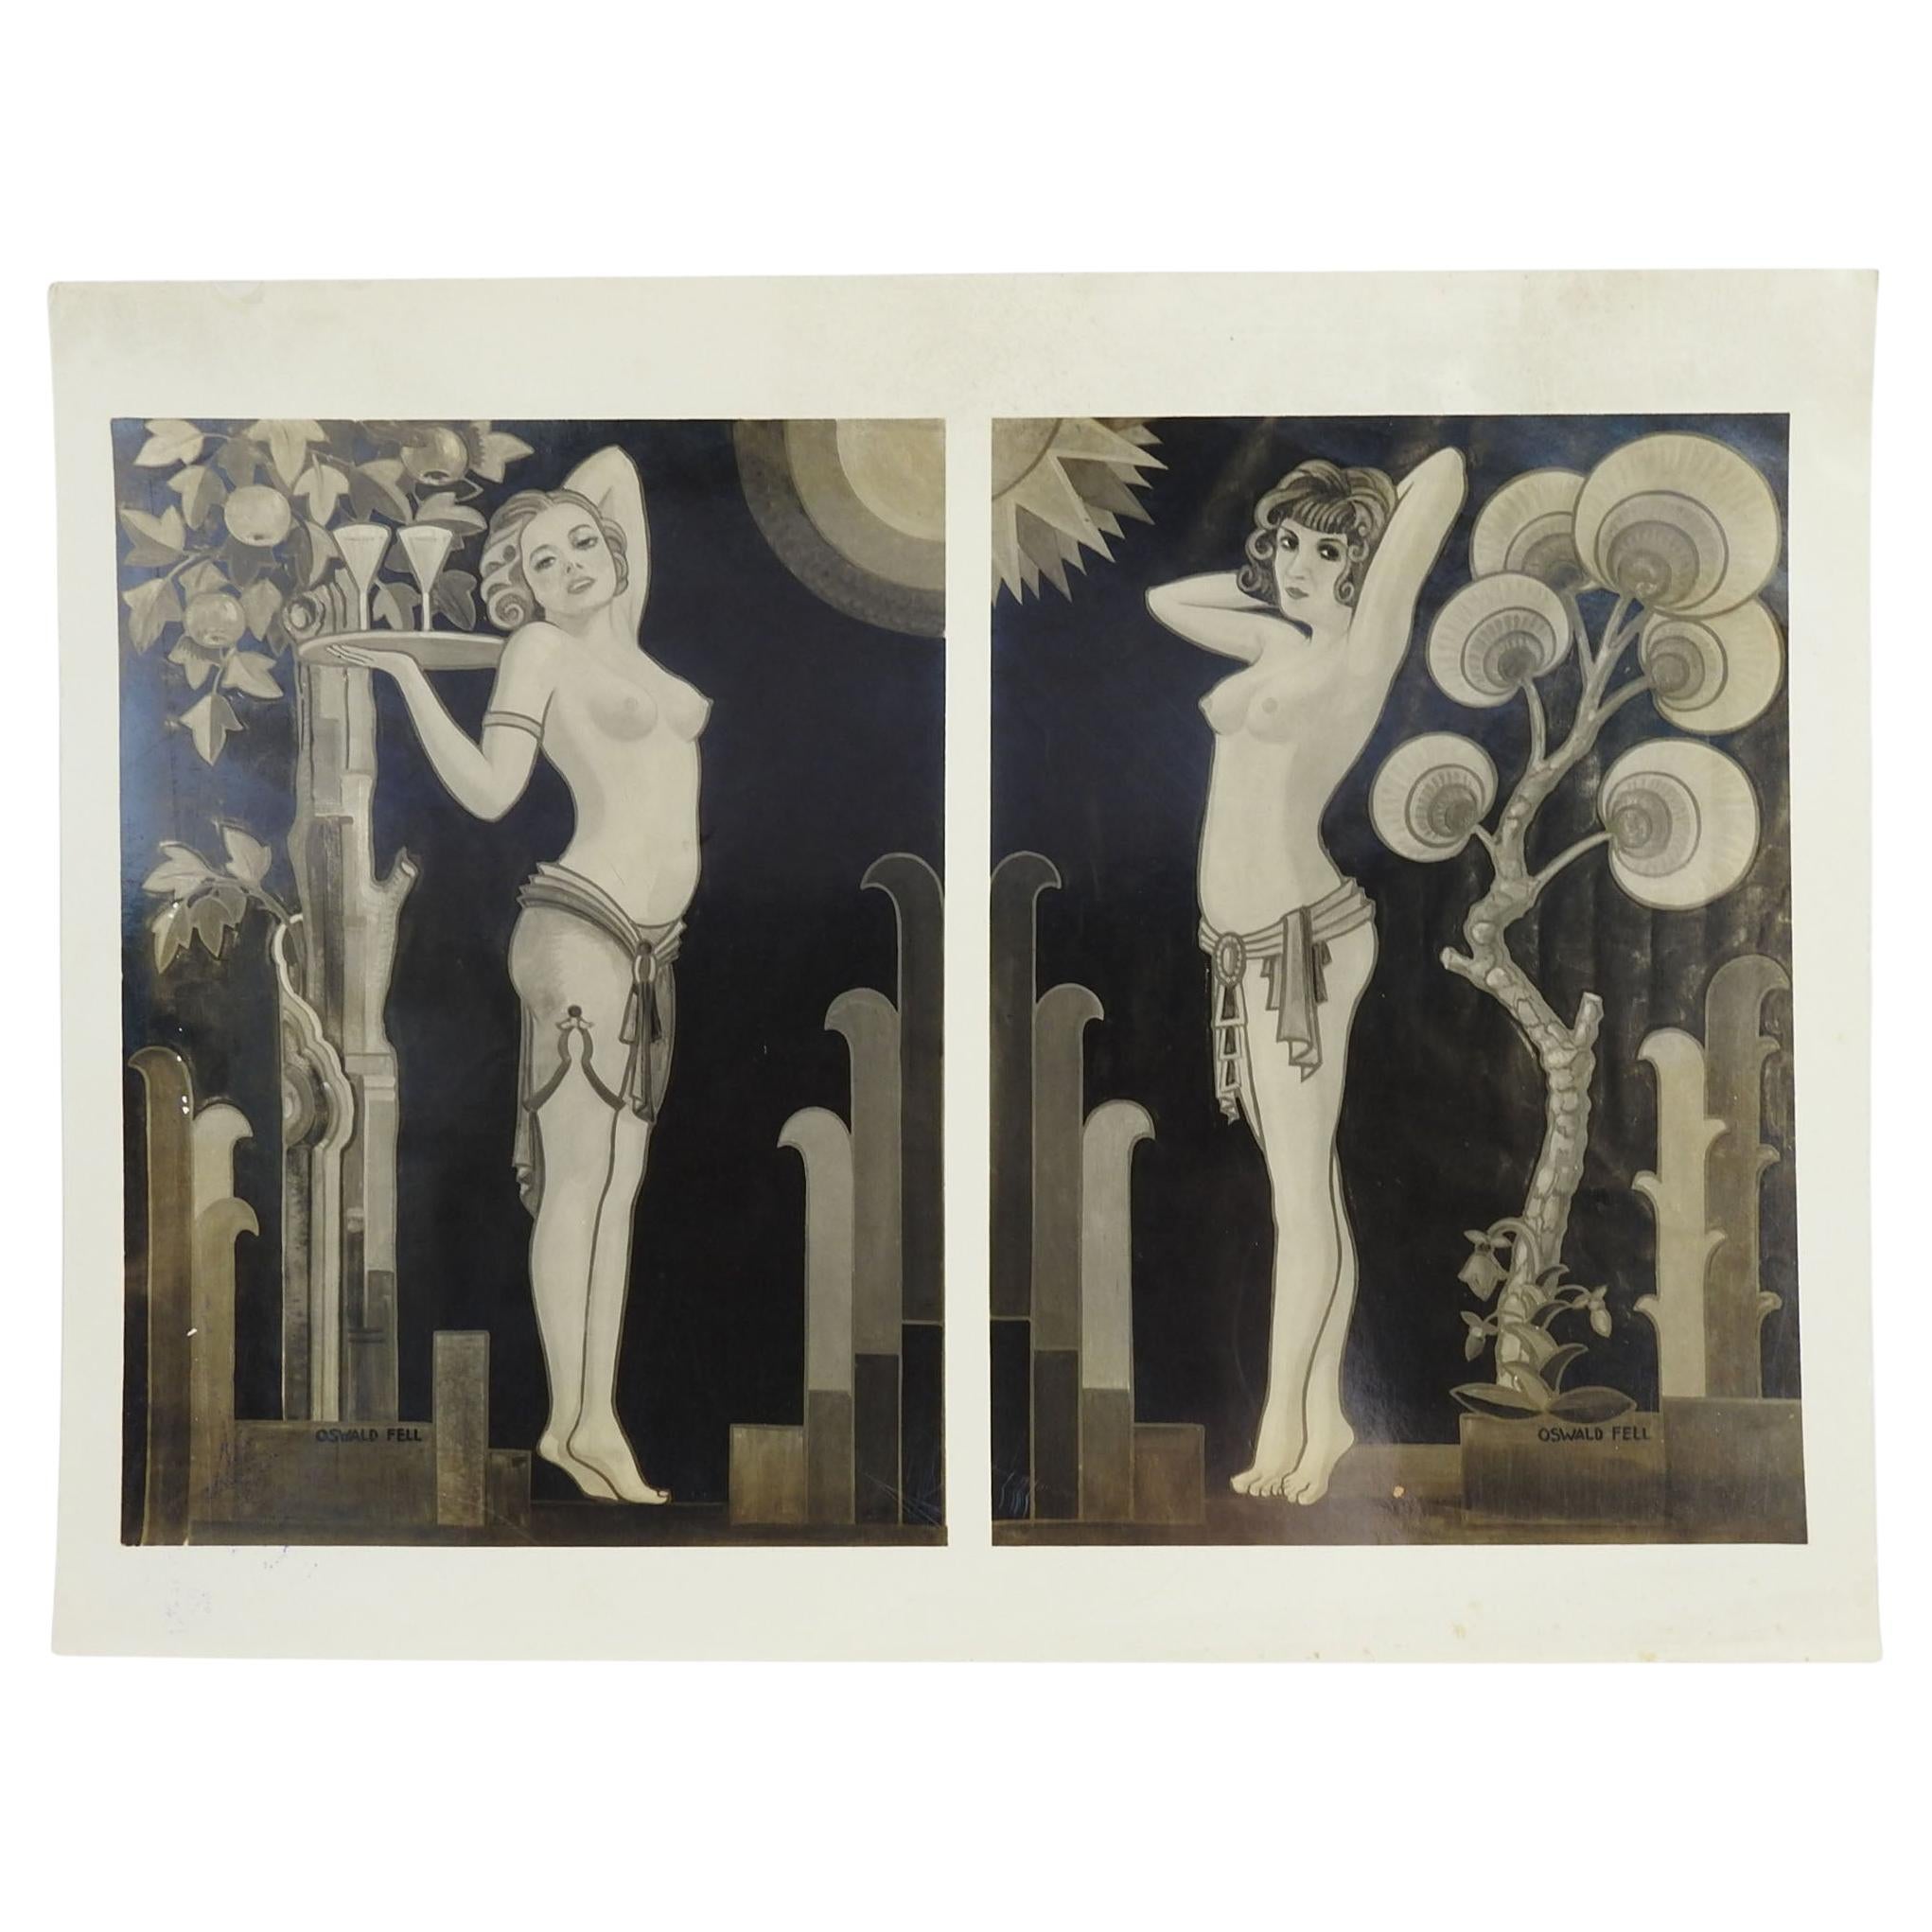 1930er Jahre Fotografie von Art-déco-Wandgemälden mit weiblichen Figuren im Halbakt